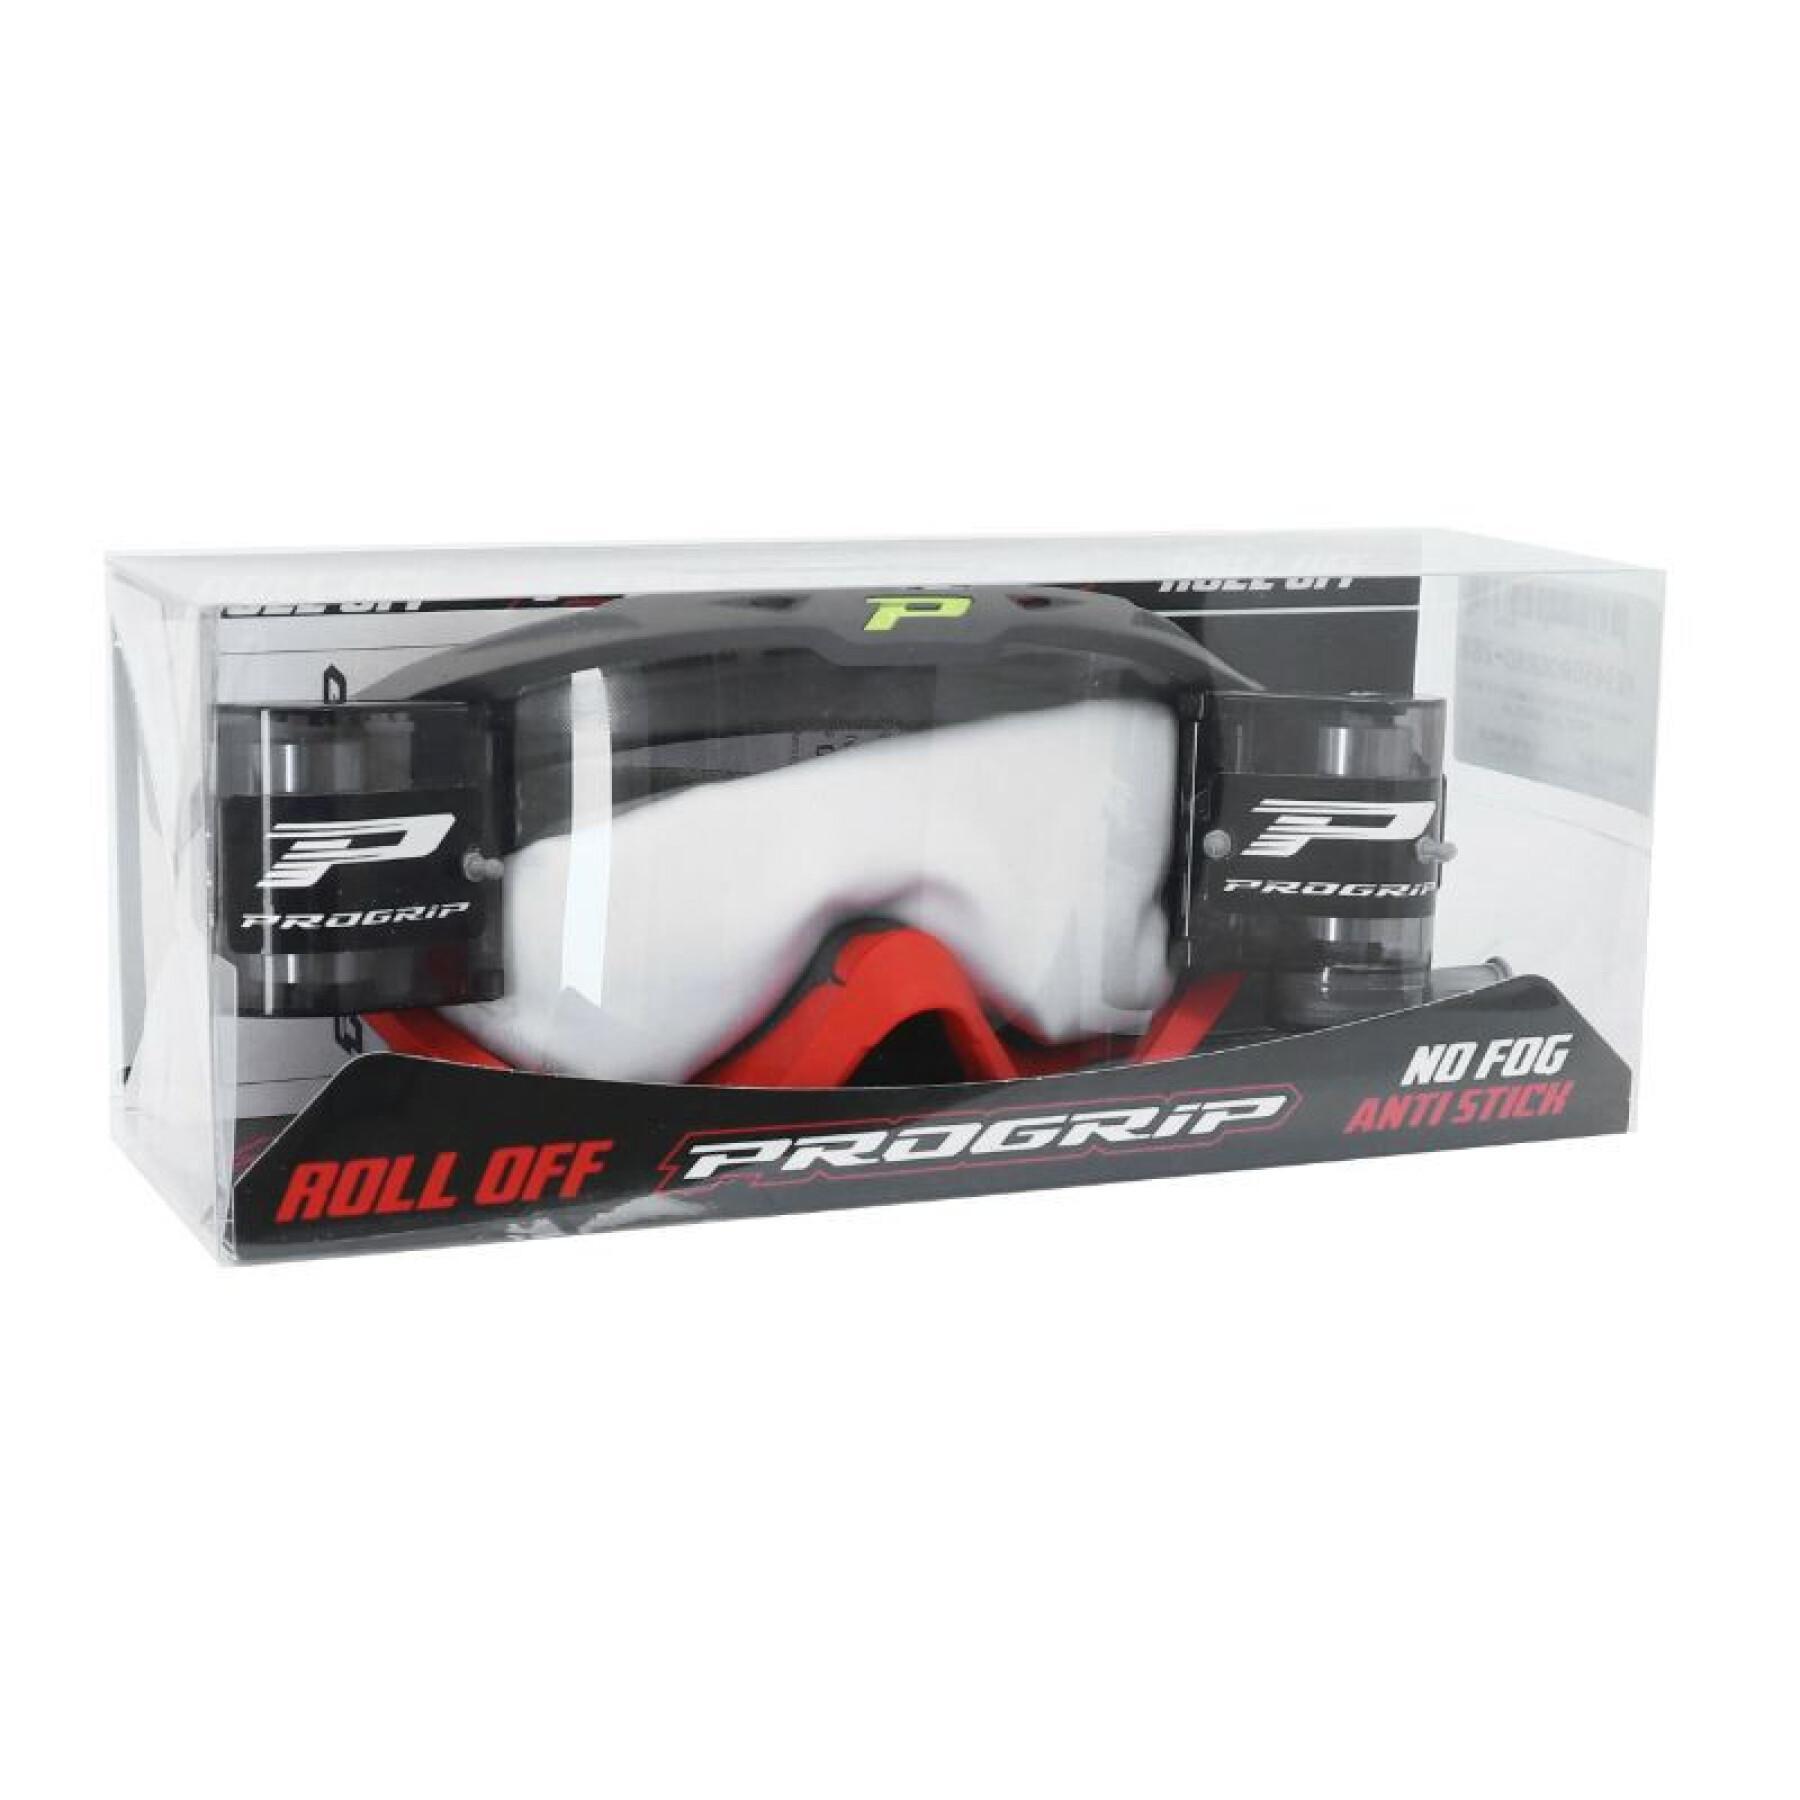 Óculos de protecção para motociclistas 3450 + roll off Progrip 3450